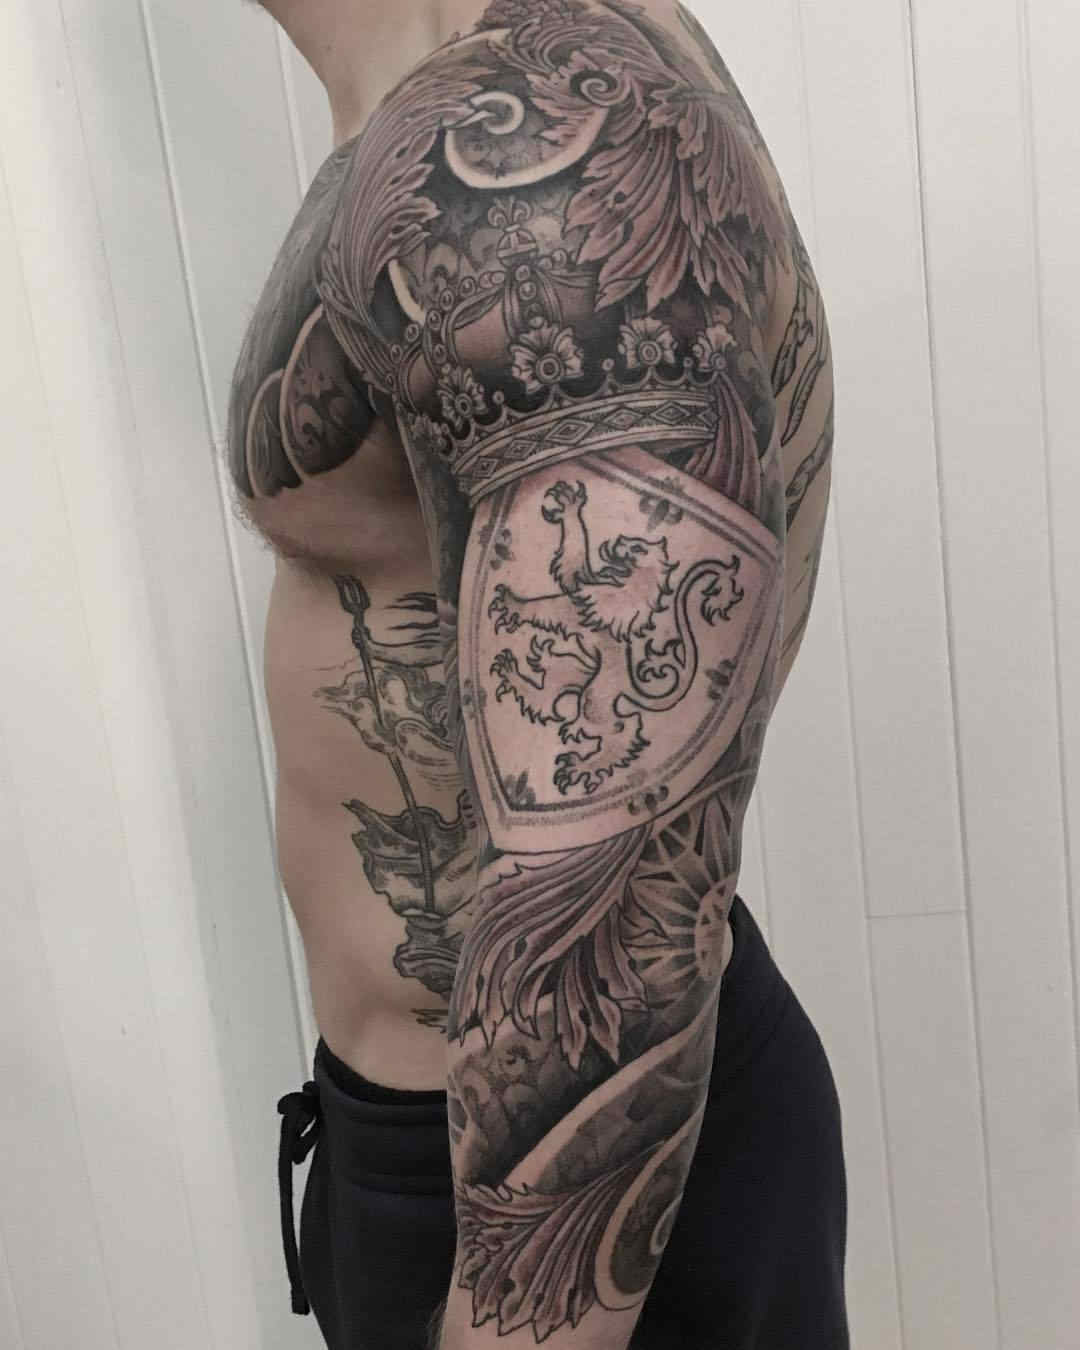 Tatuaje escocés con escudos y emblemas floreados en el brazo de un forzudo